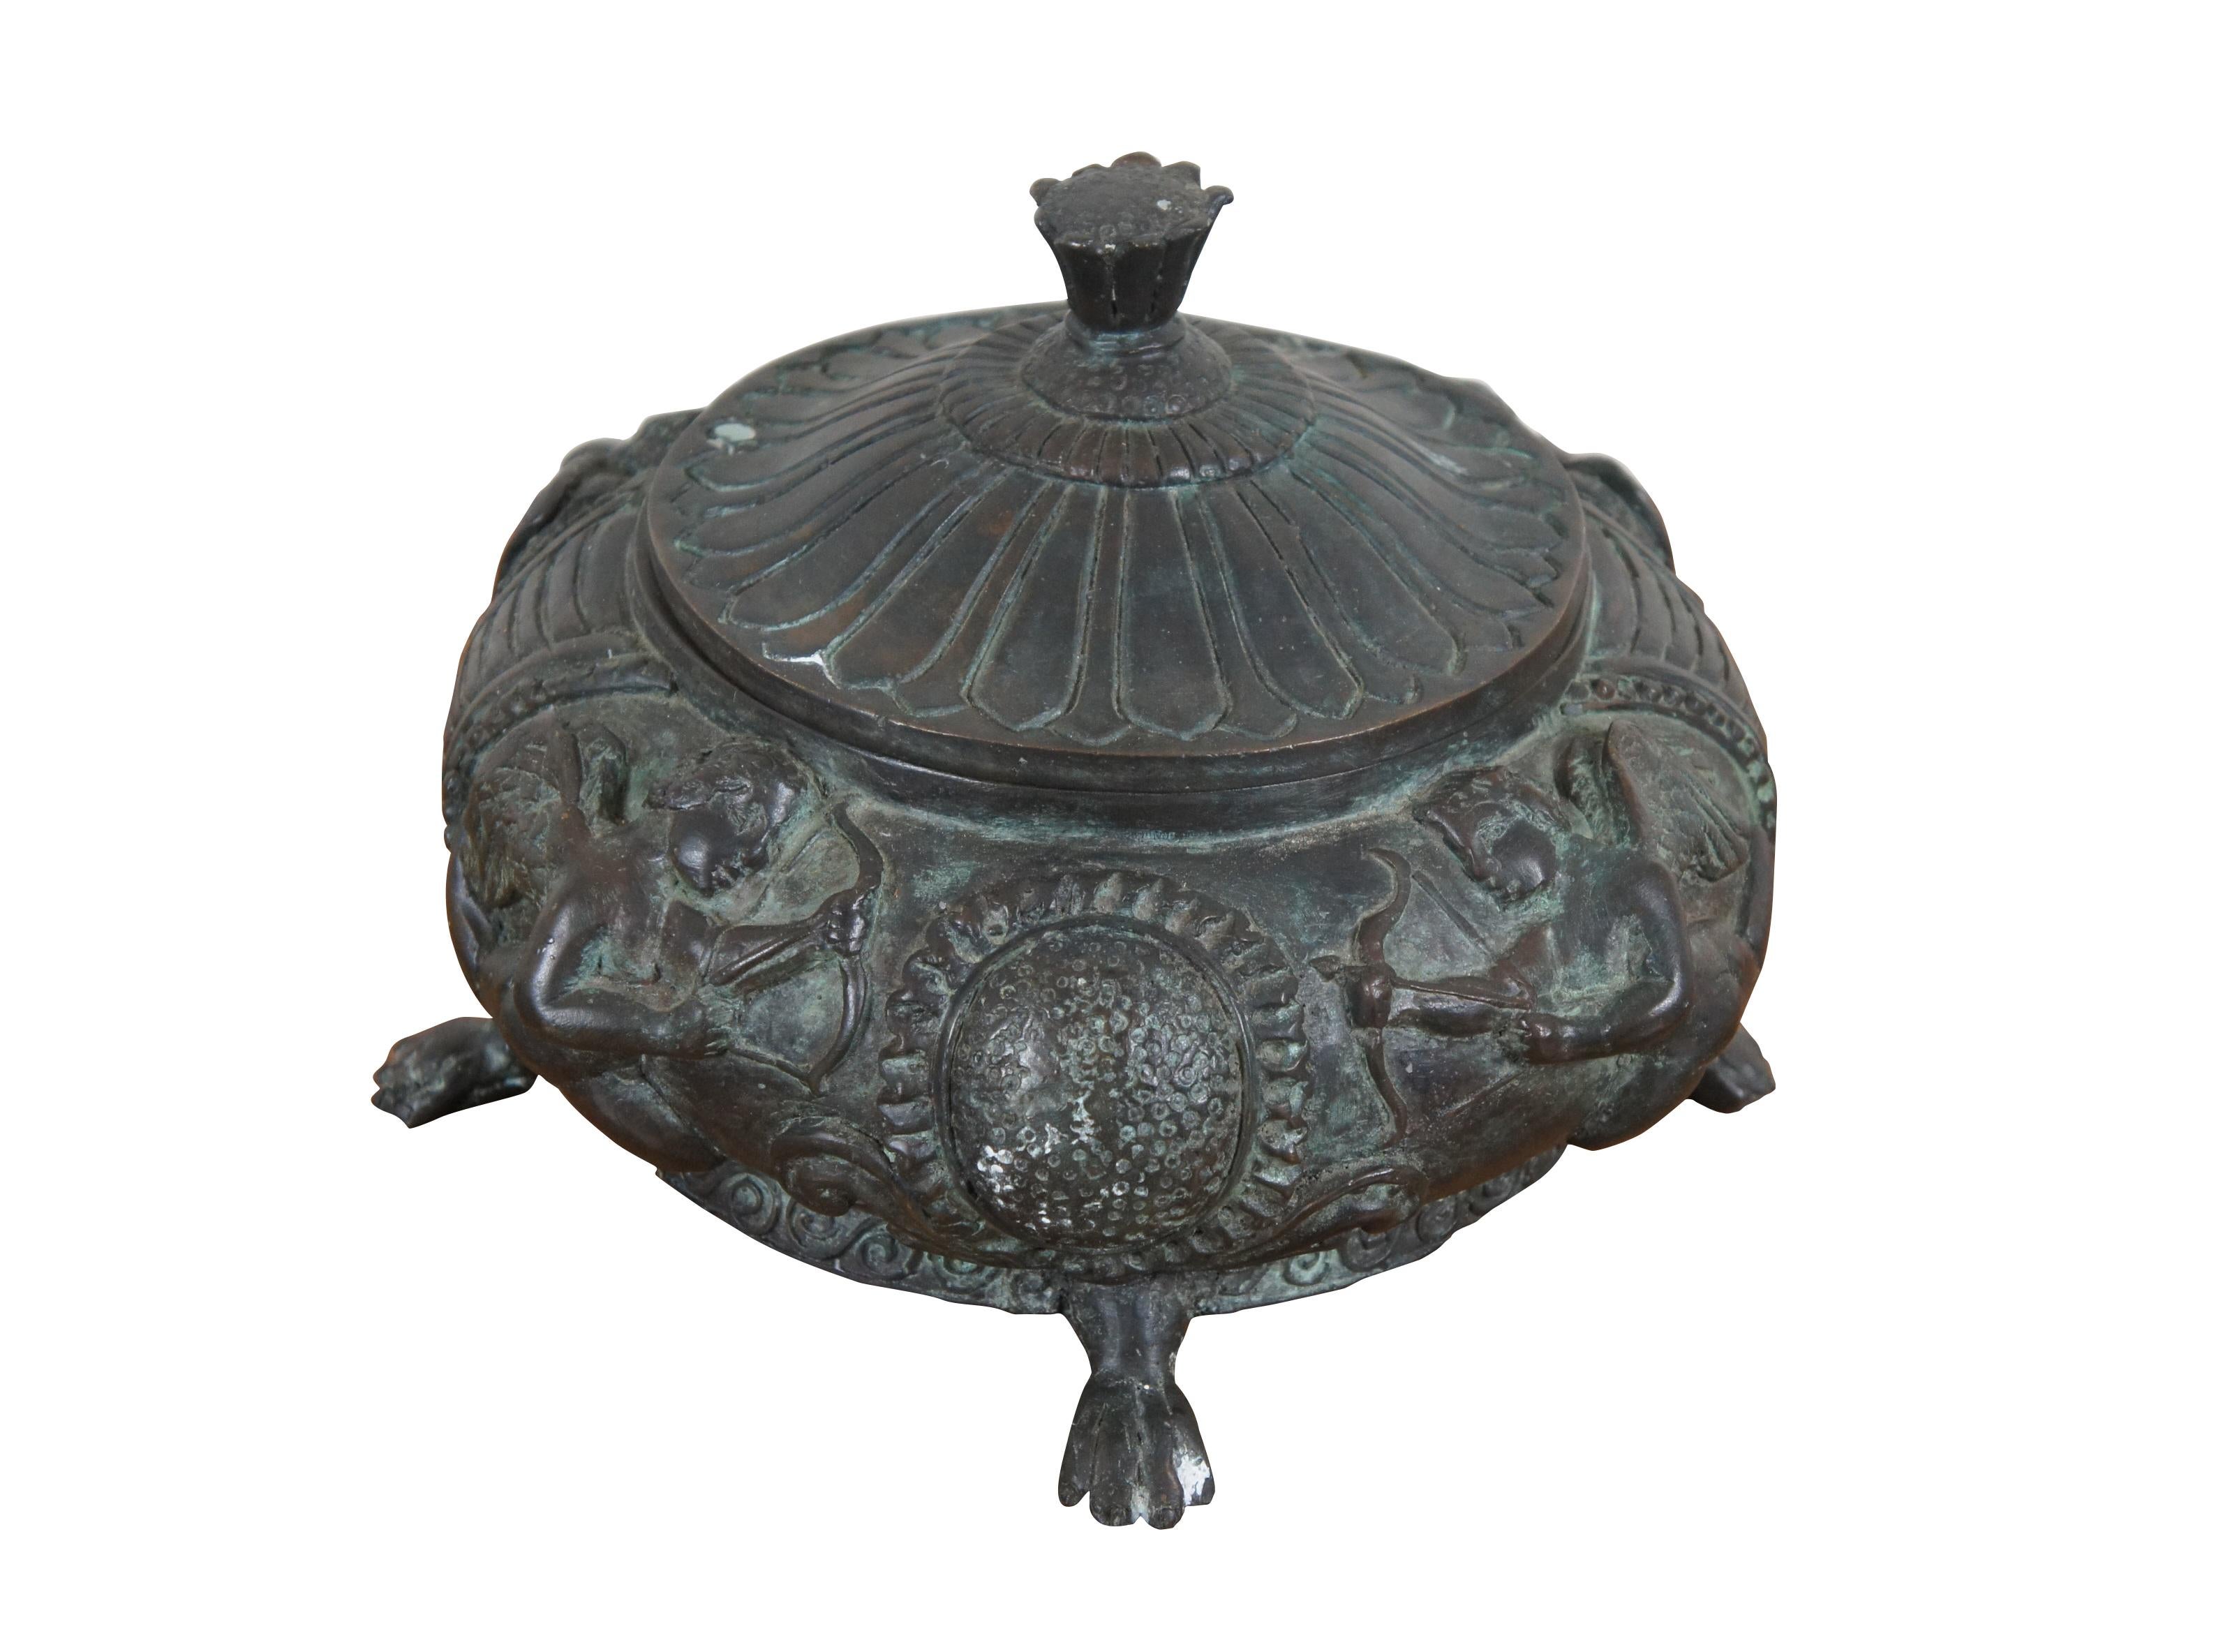 Rare urne / compotier vintage en bronze de Maitland Smith, avec couvercle et pied, de forme ronde basse sur pattes, décorée d'un motif grec / grec d'angelots en haut-relief, avec un couvercle en forme de tournesol.

Dimensions :
11,5